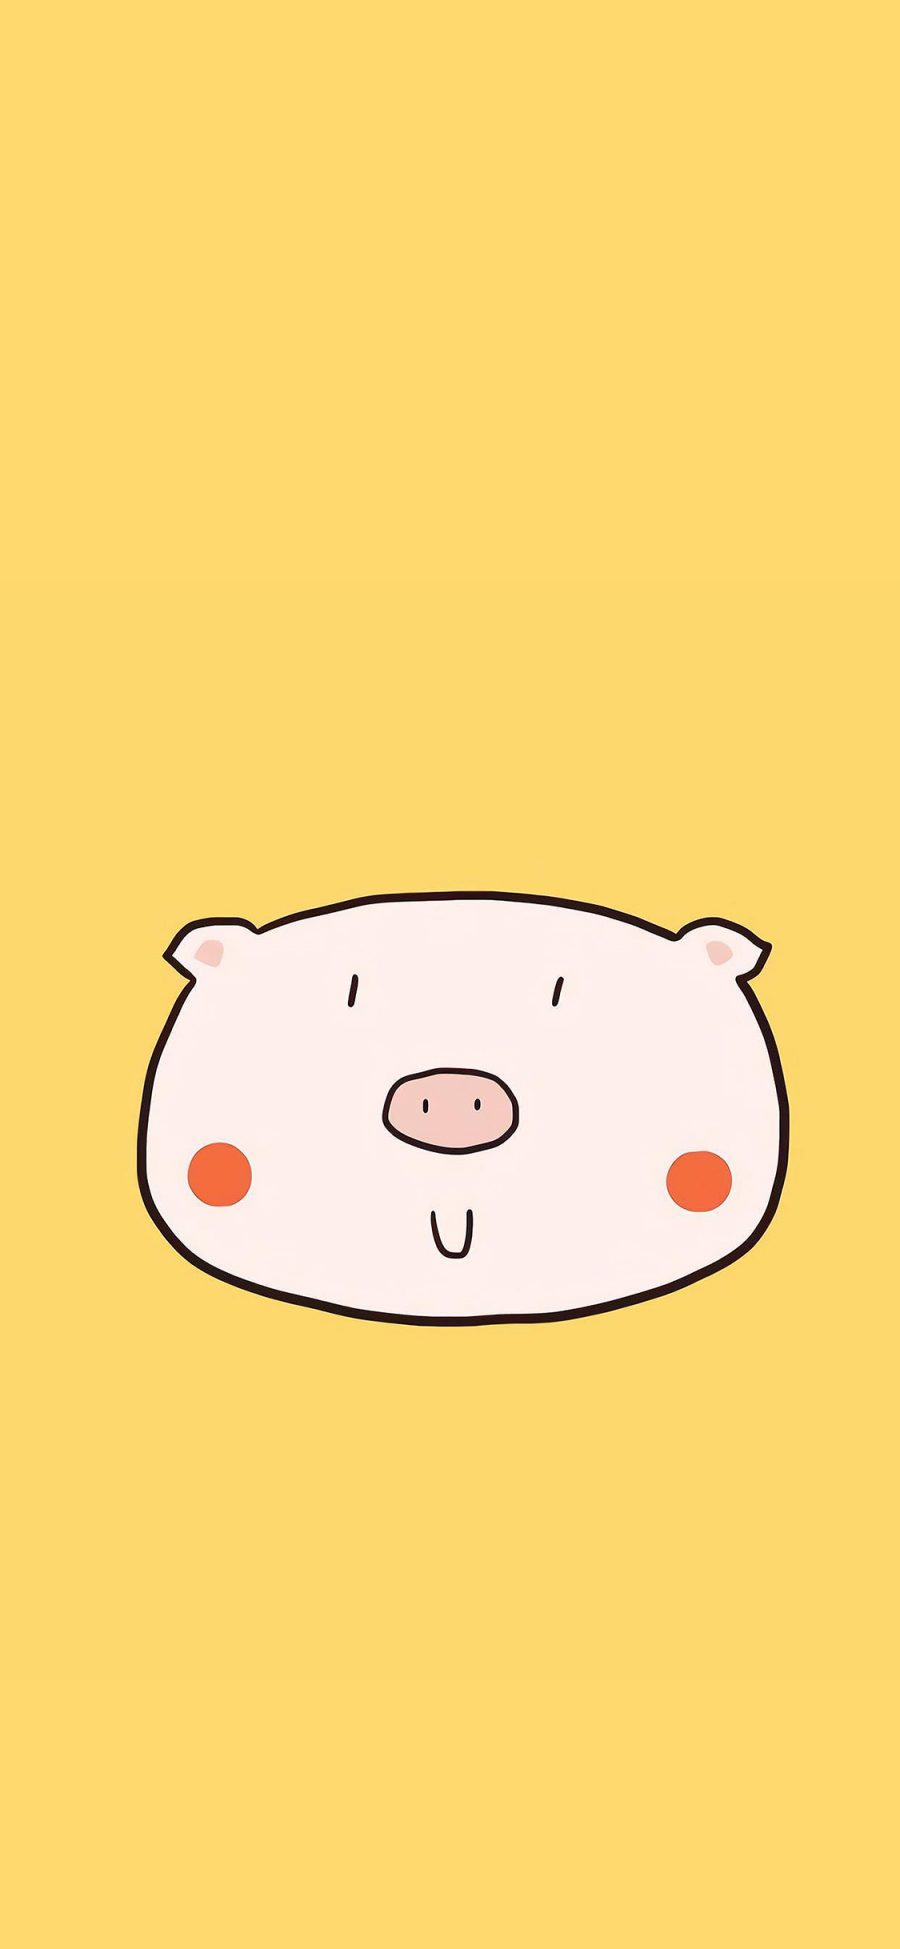 [2436×1125]猪头 可爱 简笔 黄色 苹果手机动漫壁纸图片